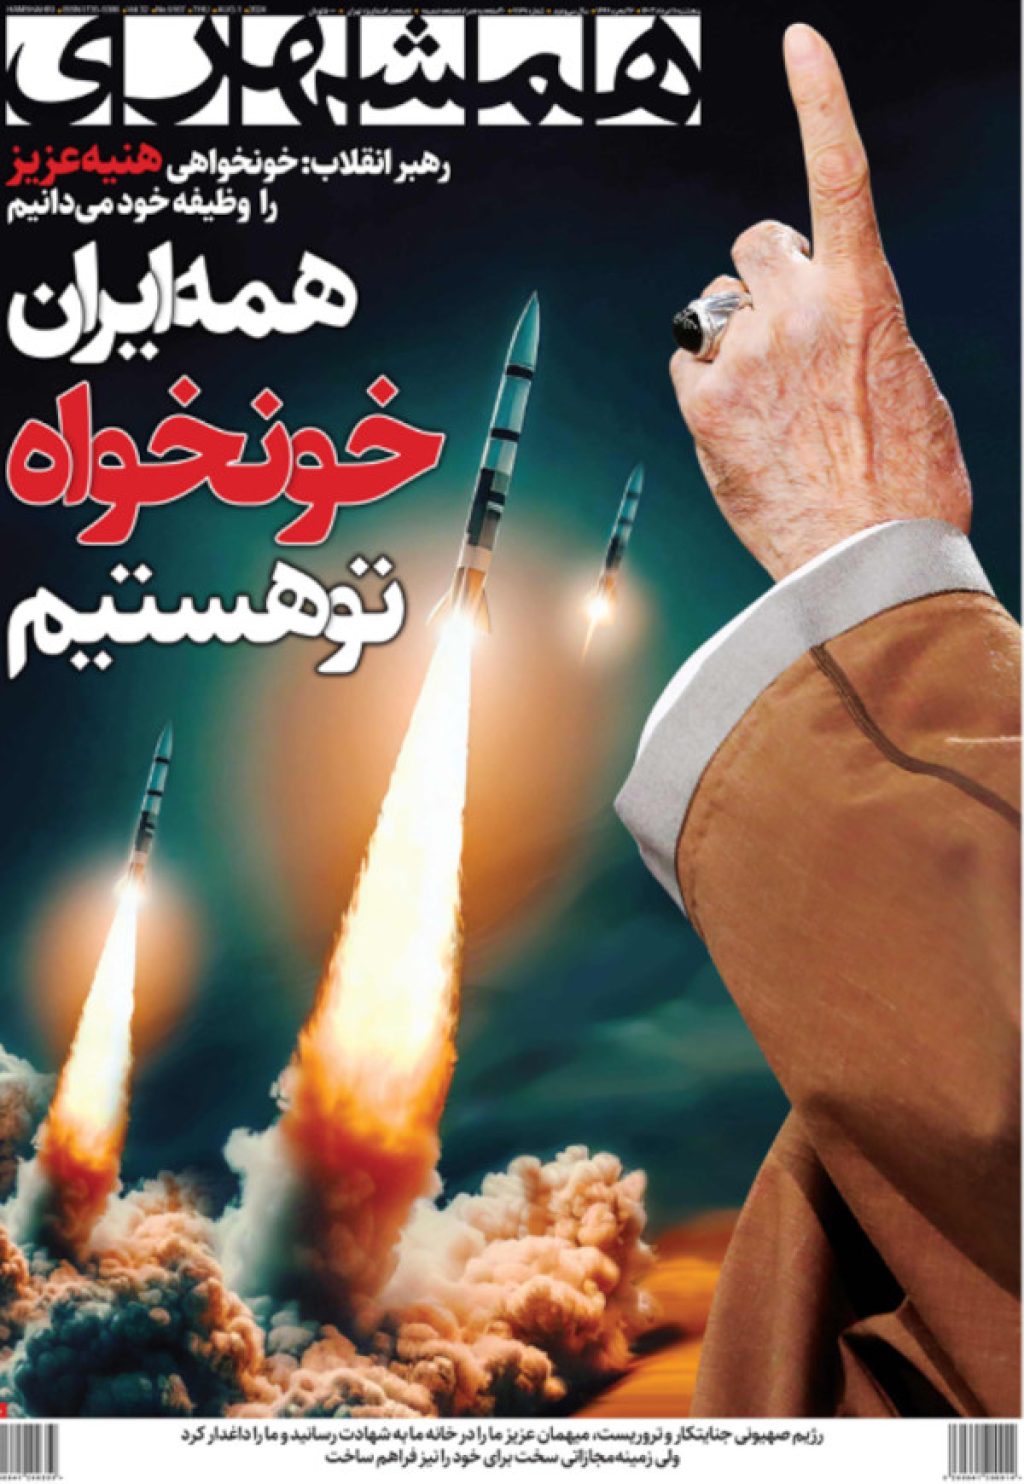 Bloodlust graphic Iran newspaper